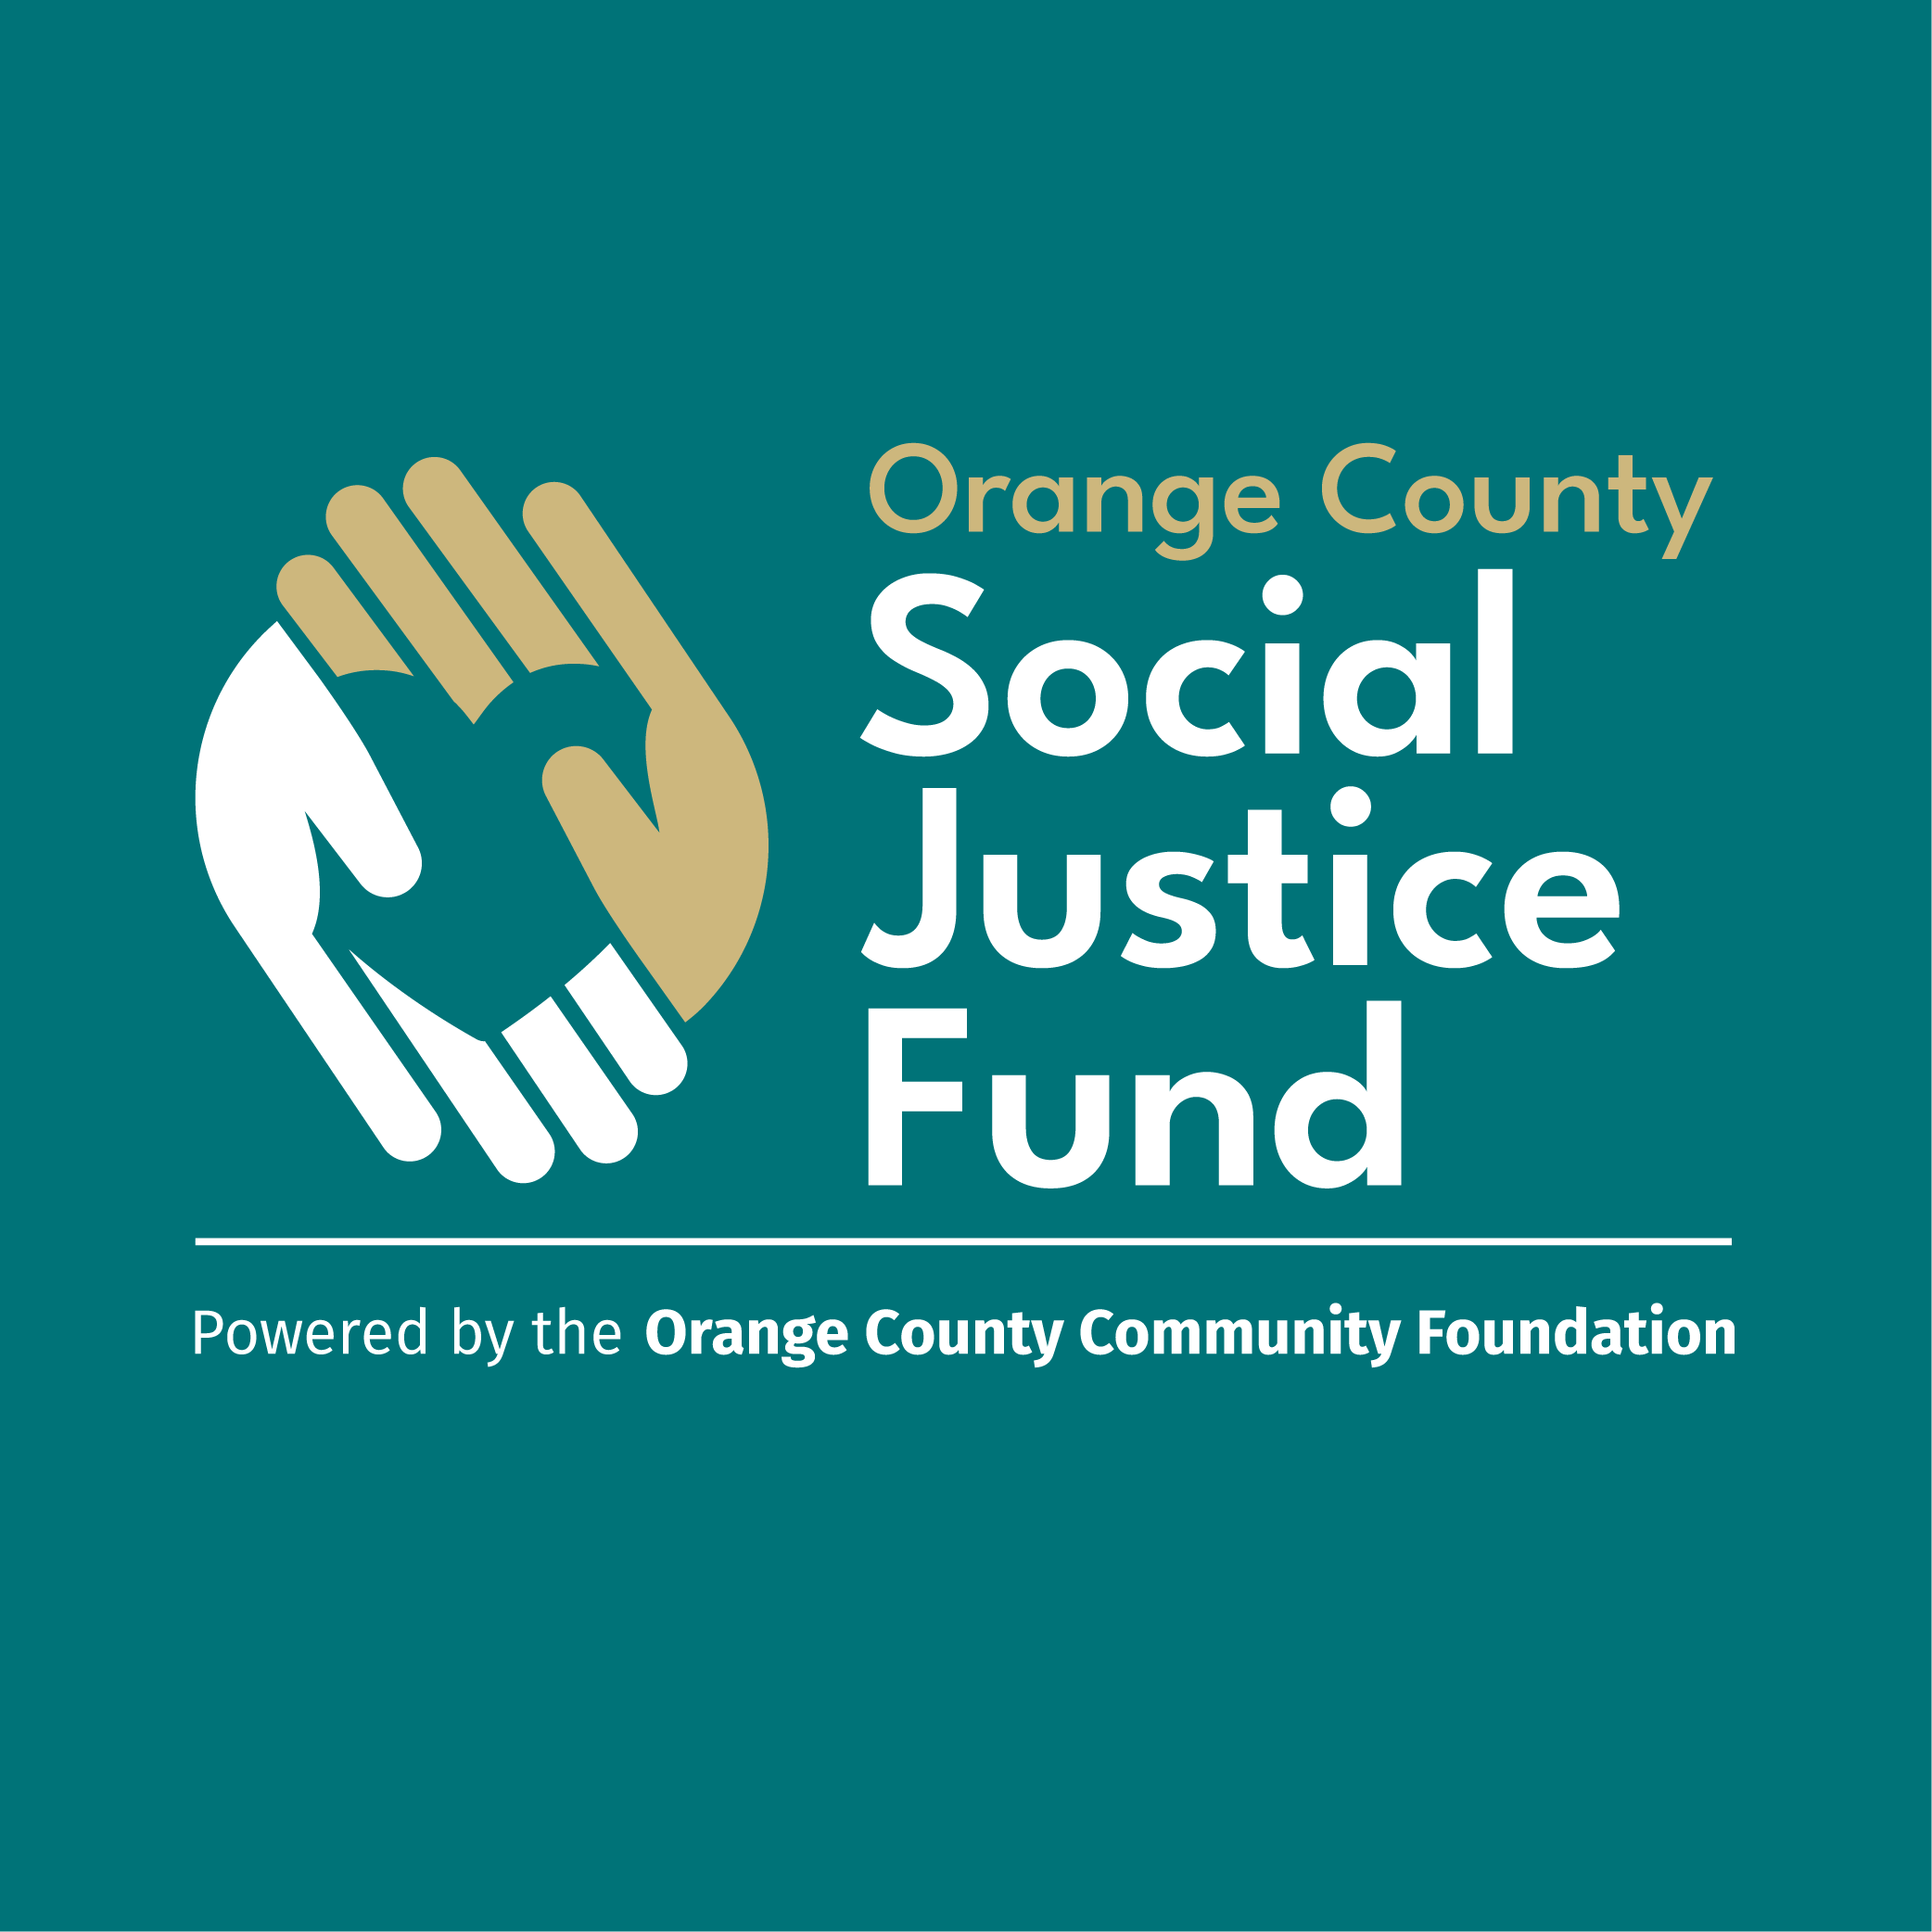 Orange County Social Justice Fund